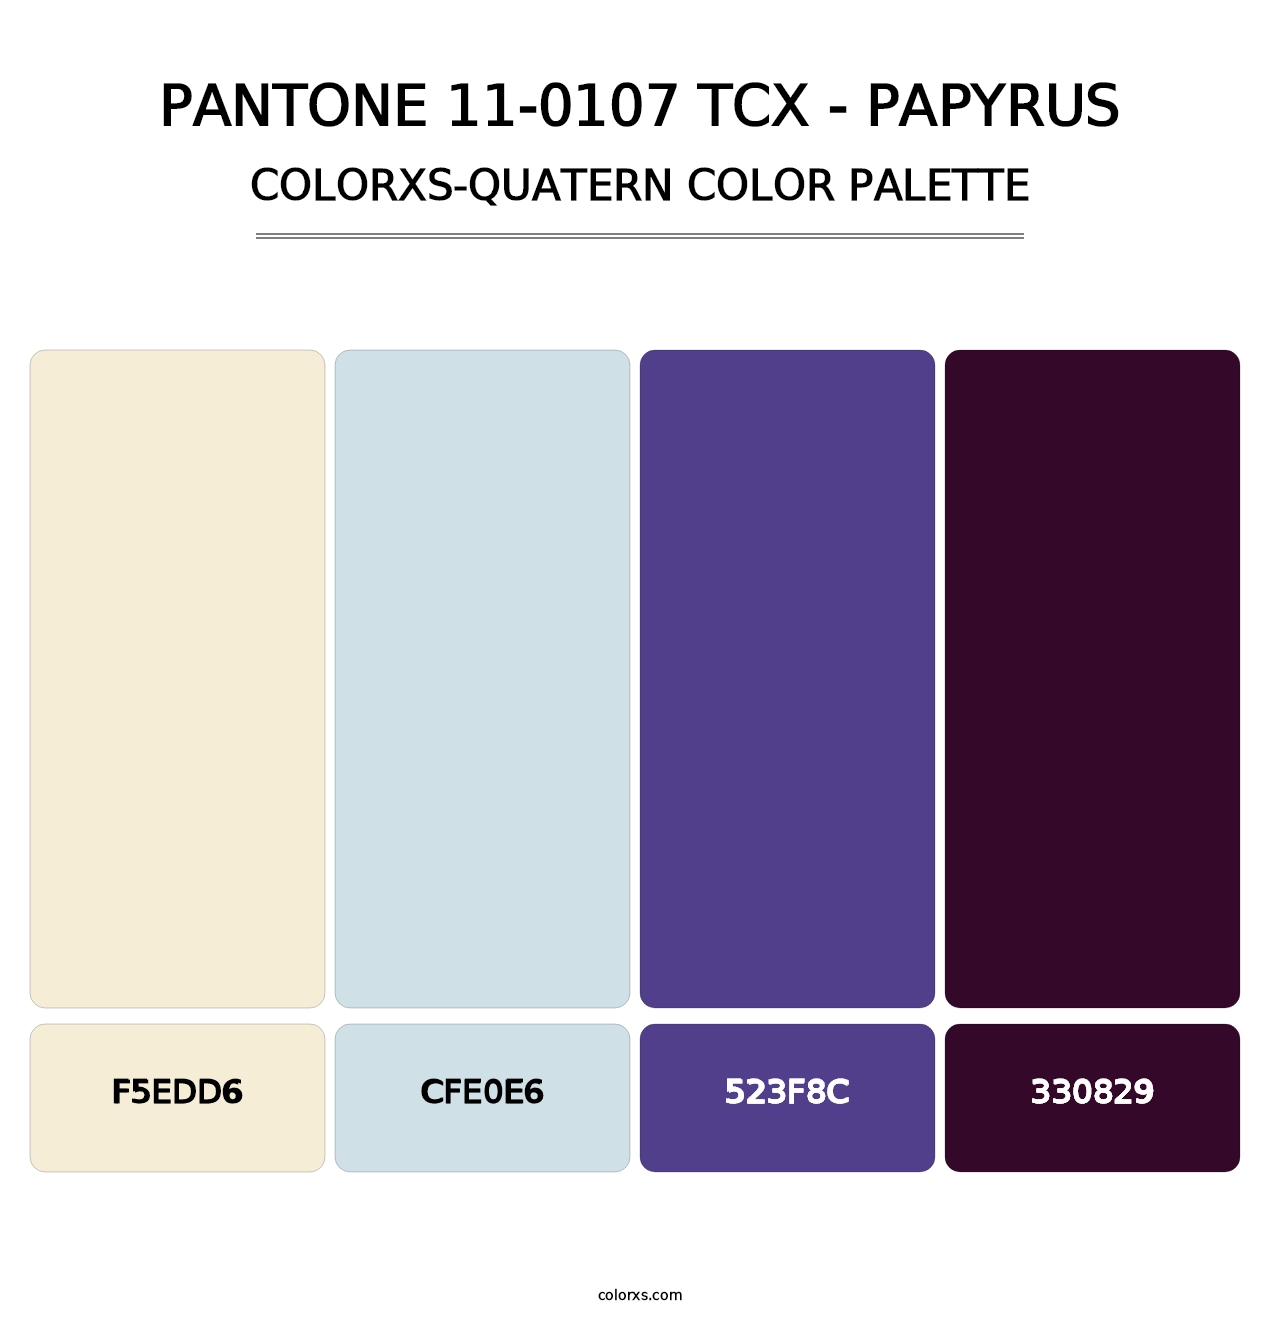 PANTONE 11-0107 TCX - Papyrus - Colorxs Quatern Palette